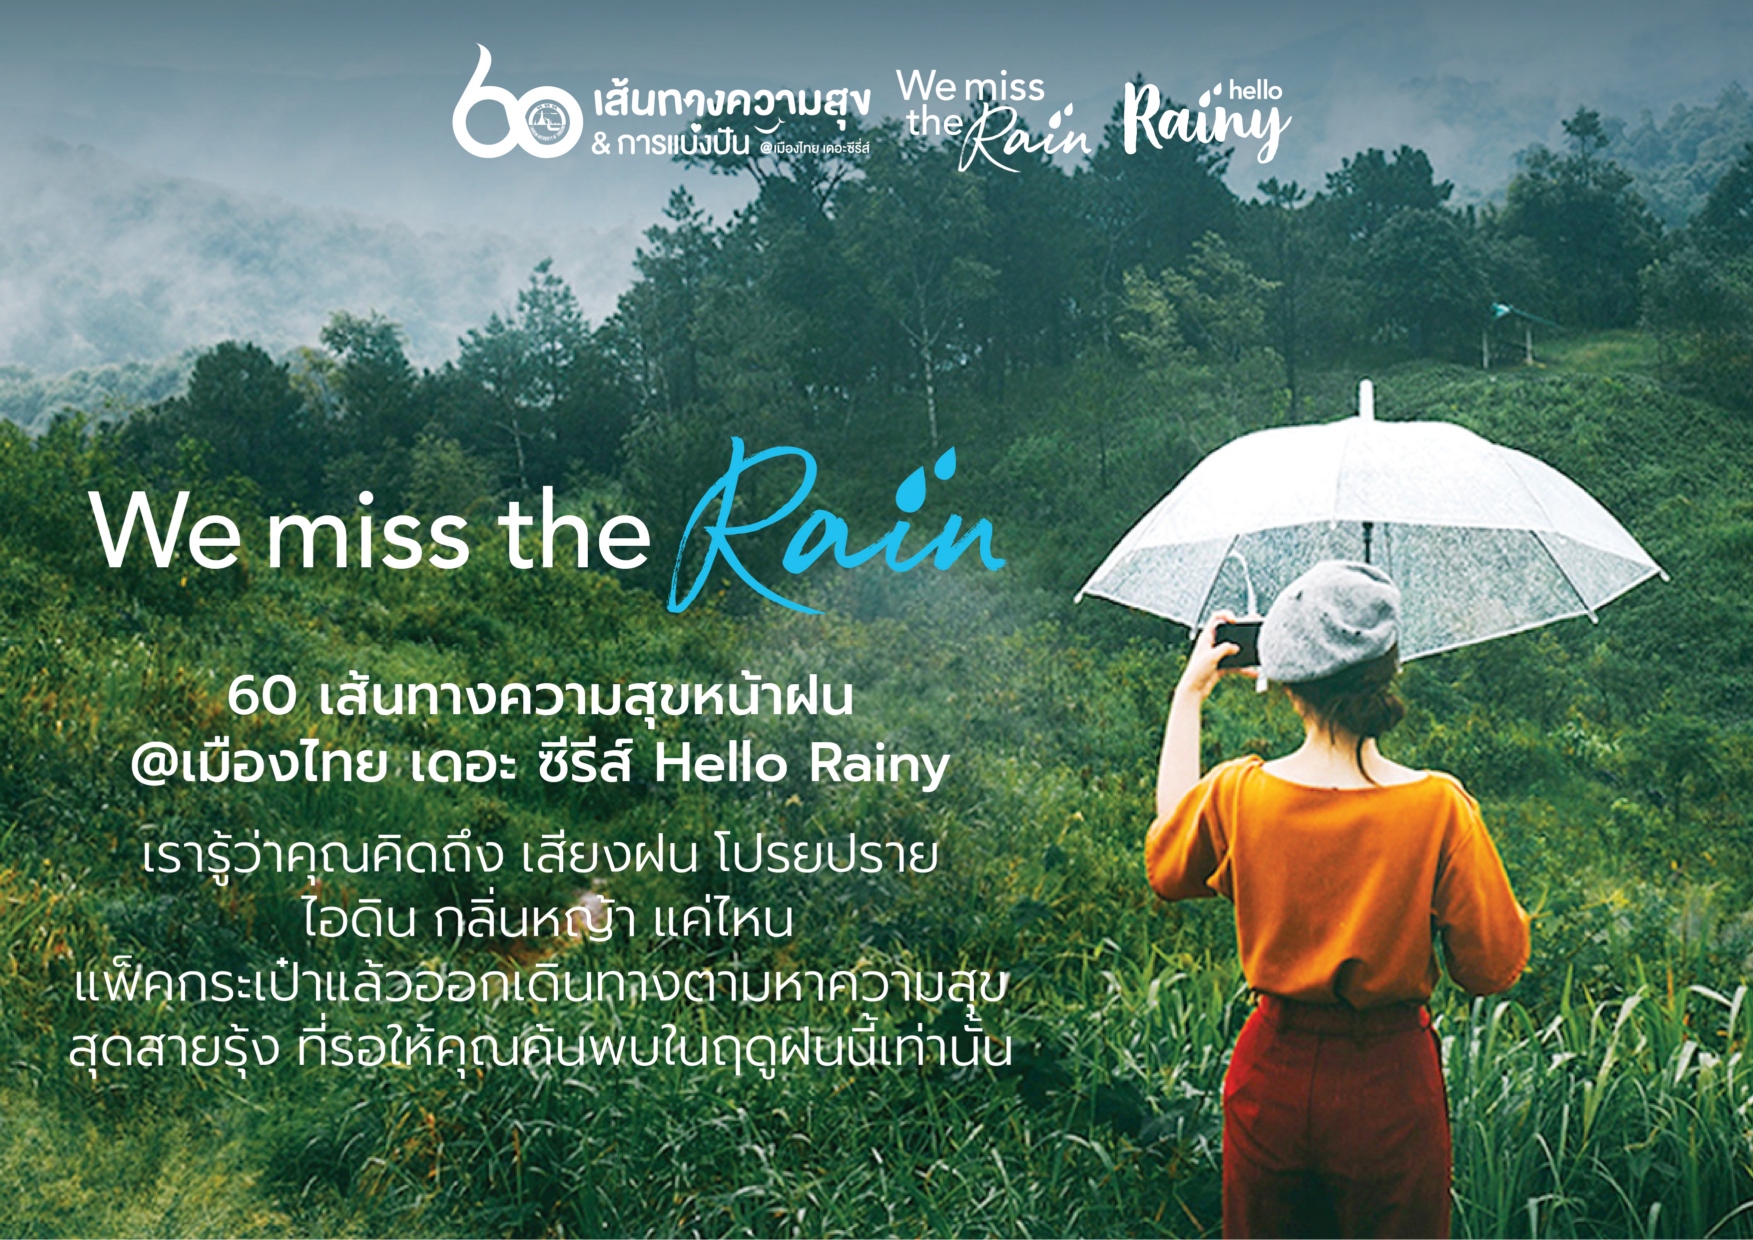 ททท. จัดแคมเปญ We miss the rain 60 เส้นทางความสุขหน้าฝน @ เมืองไทย เดอะ ซีรีส์ชวนนักเดินทางแพ็คกระเป๋าออกตามหาความสุขที่คุณคิดถึง